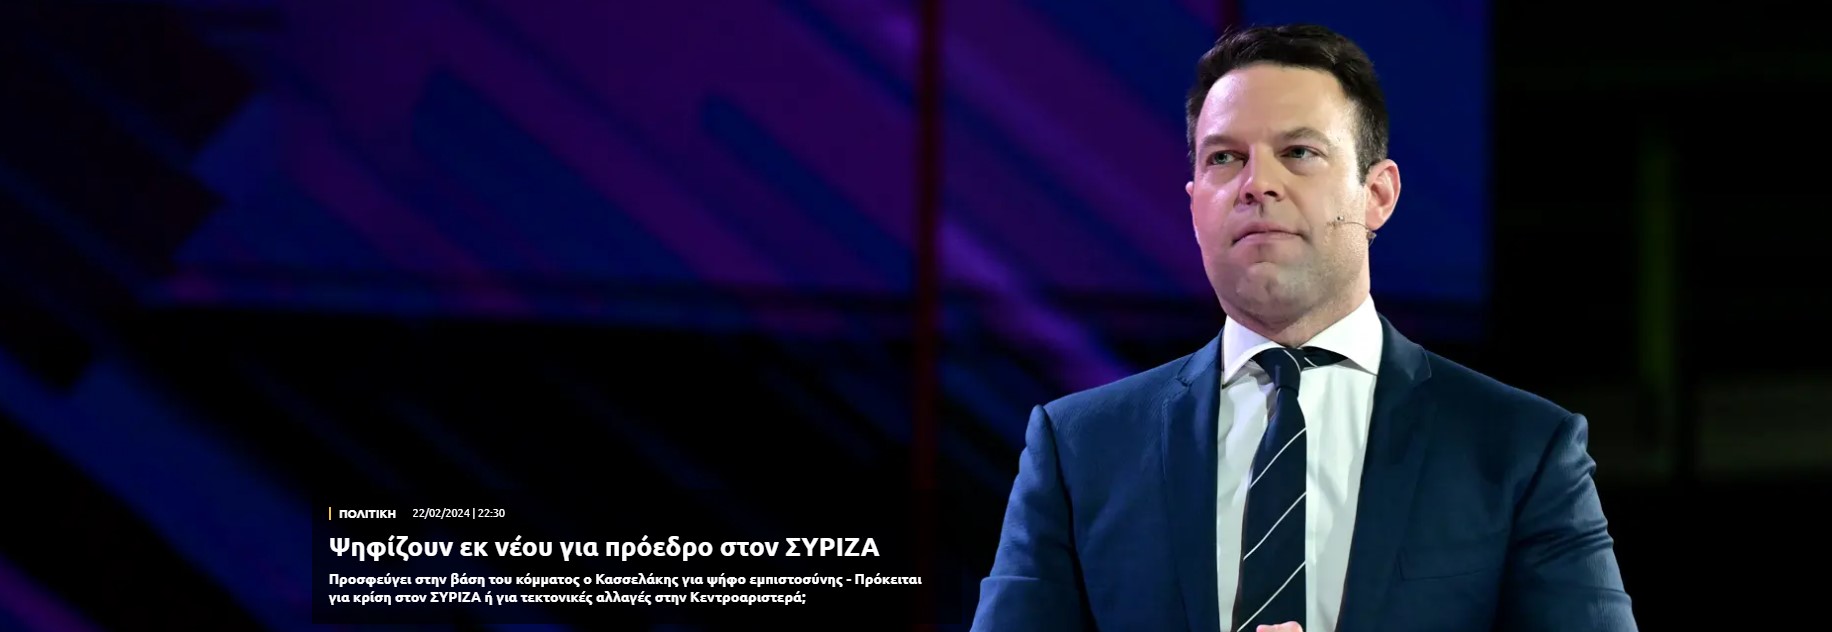 Ψηφίζουν εκ νέου για πρόεδρο στον ΣΥΡΙΖΑ